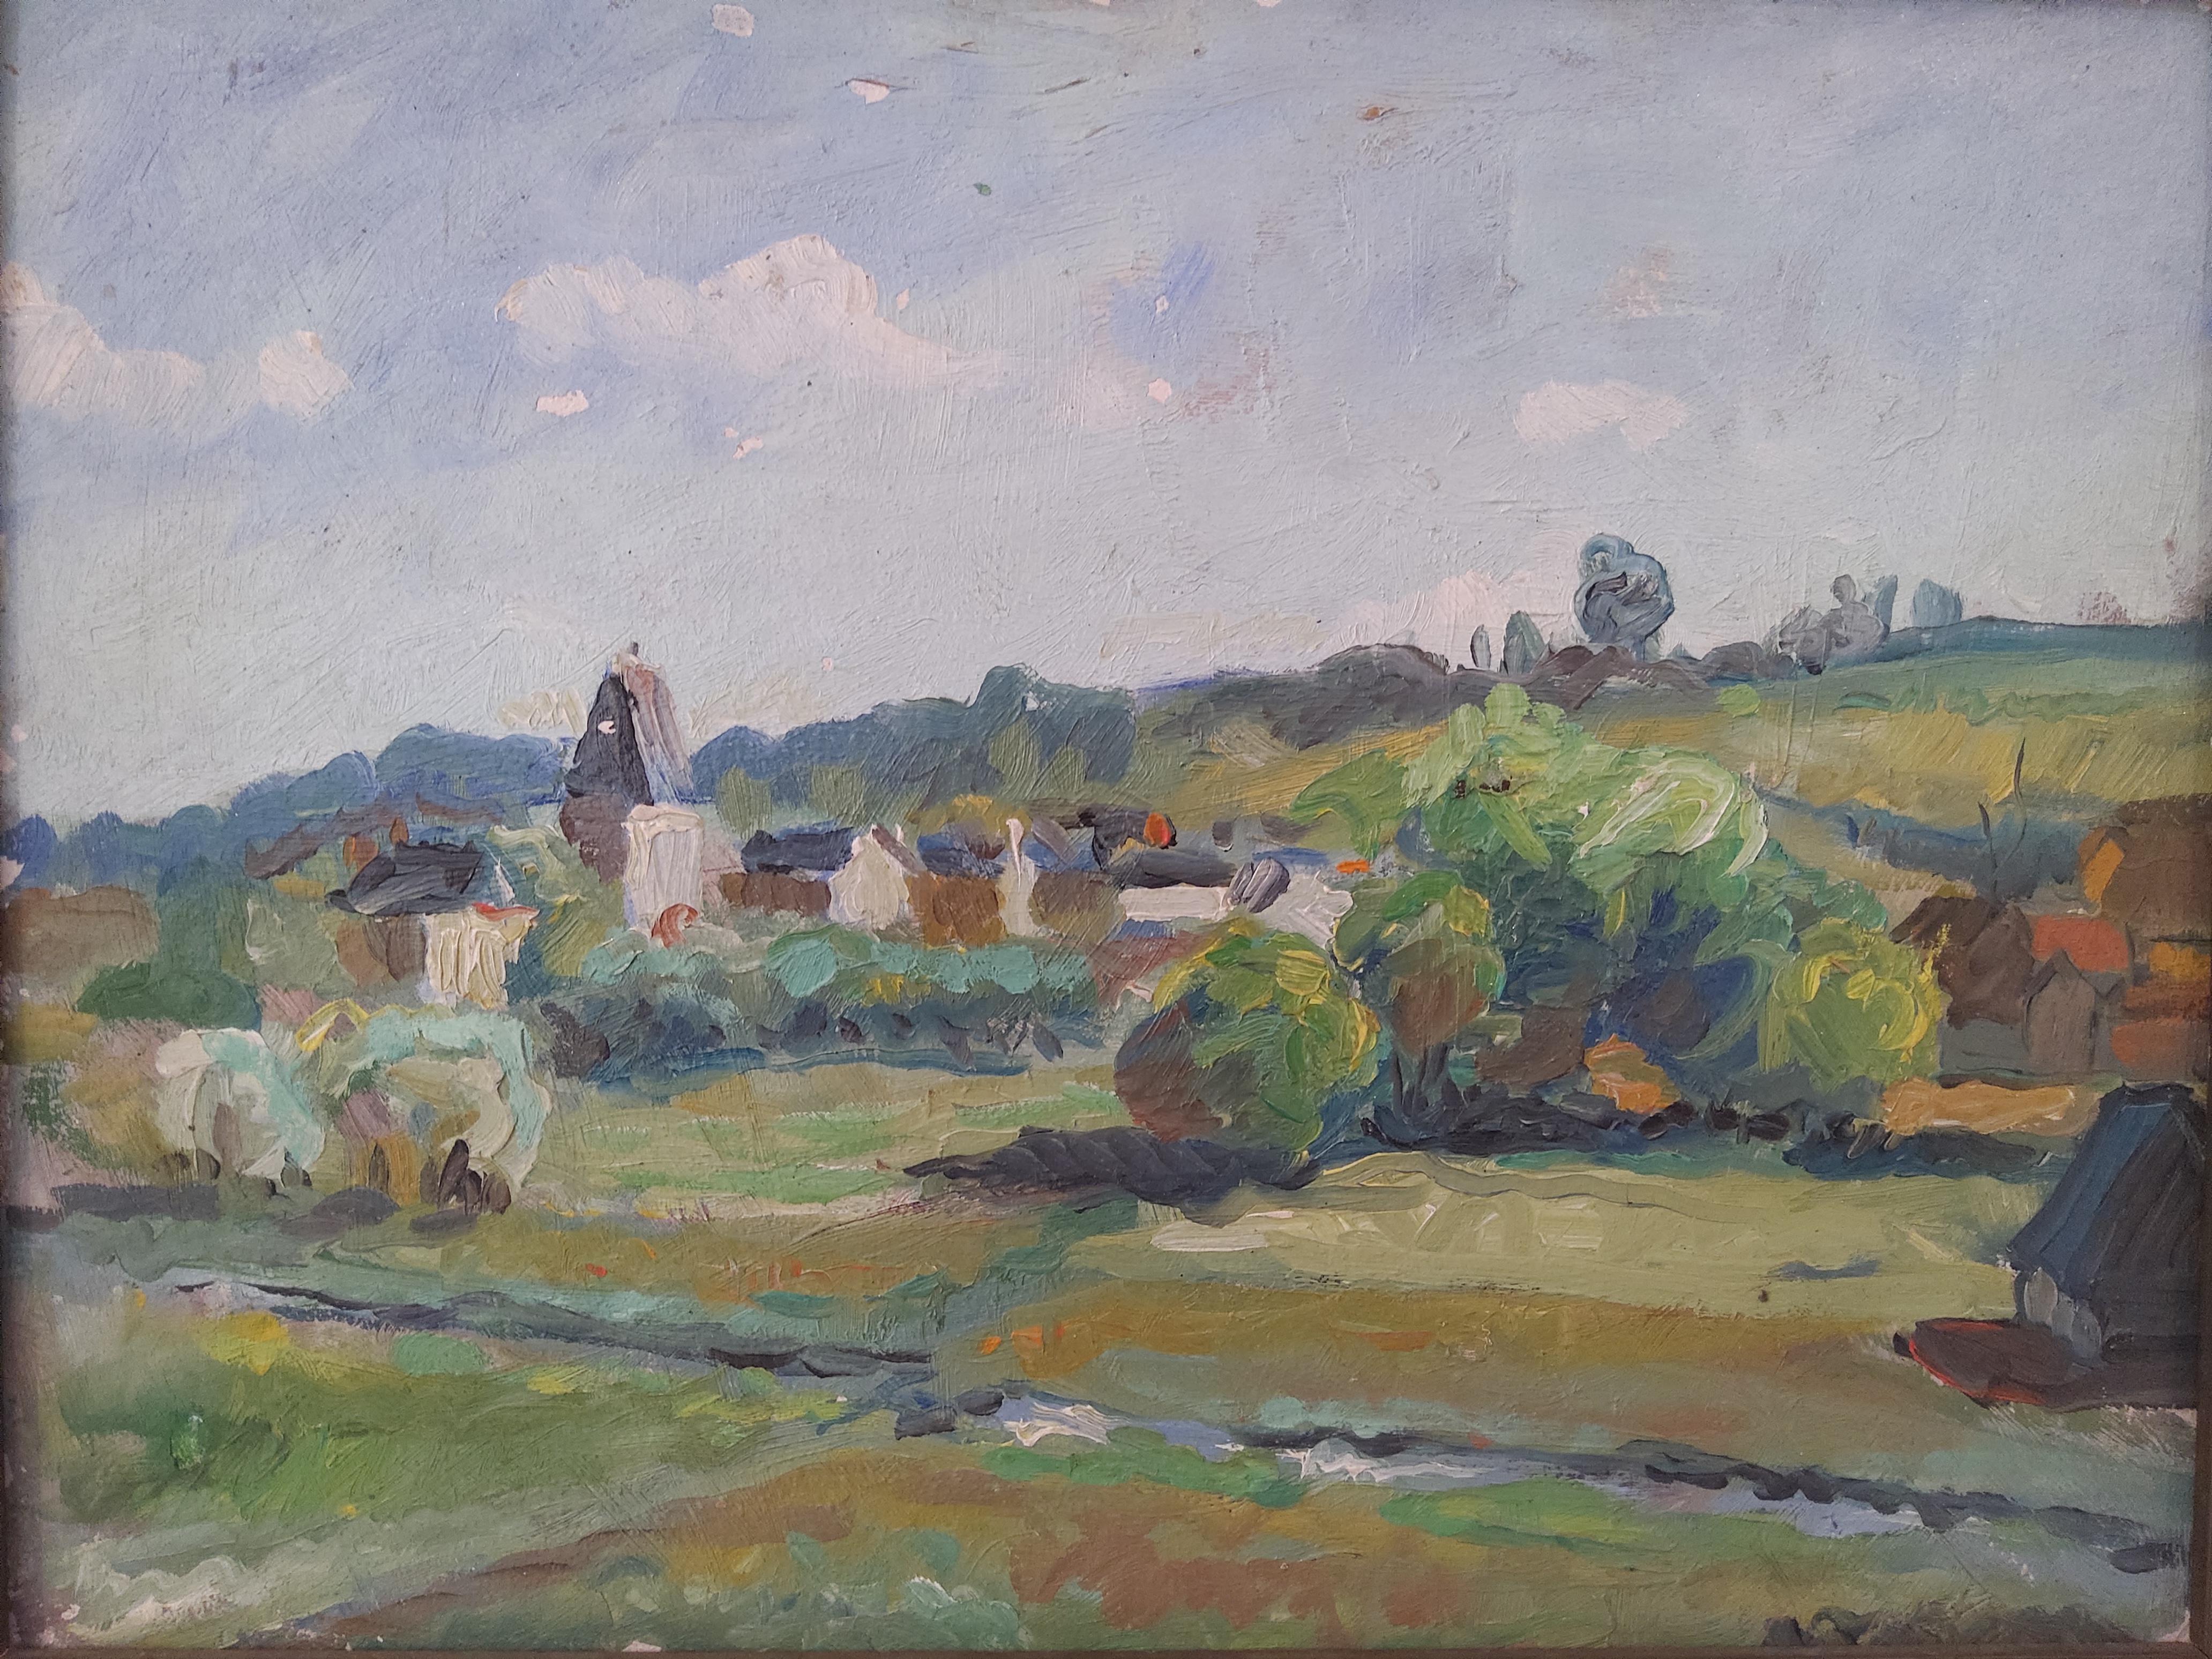 Barbizon School Landscape, Près de Bec de Mortagne. - Painting by Unknown